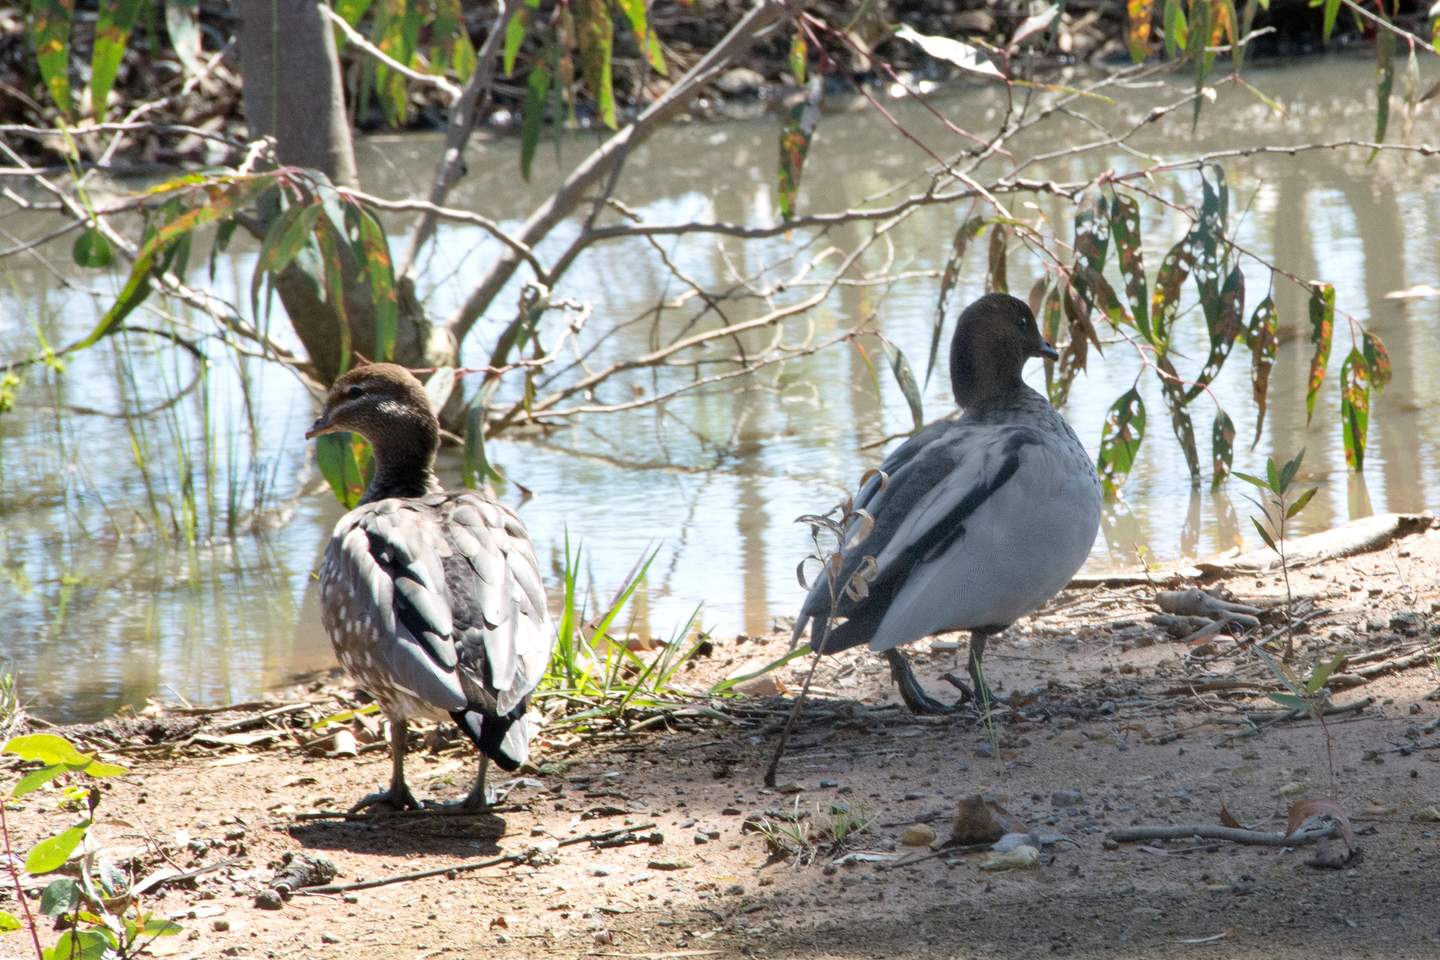 Ducks waddling near the water